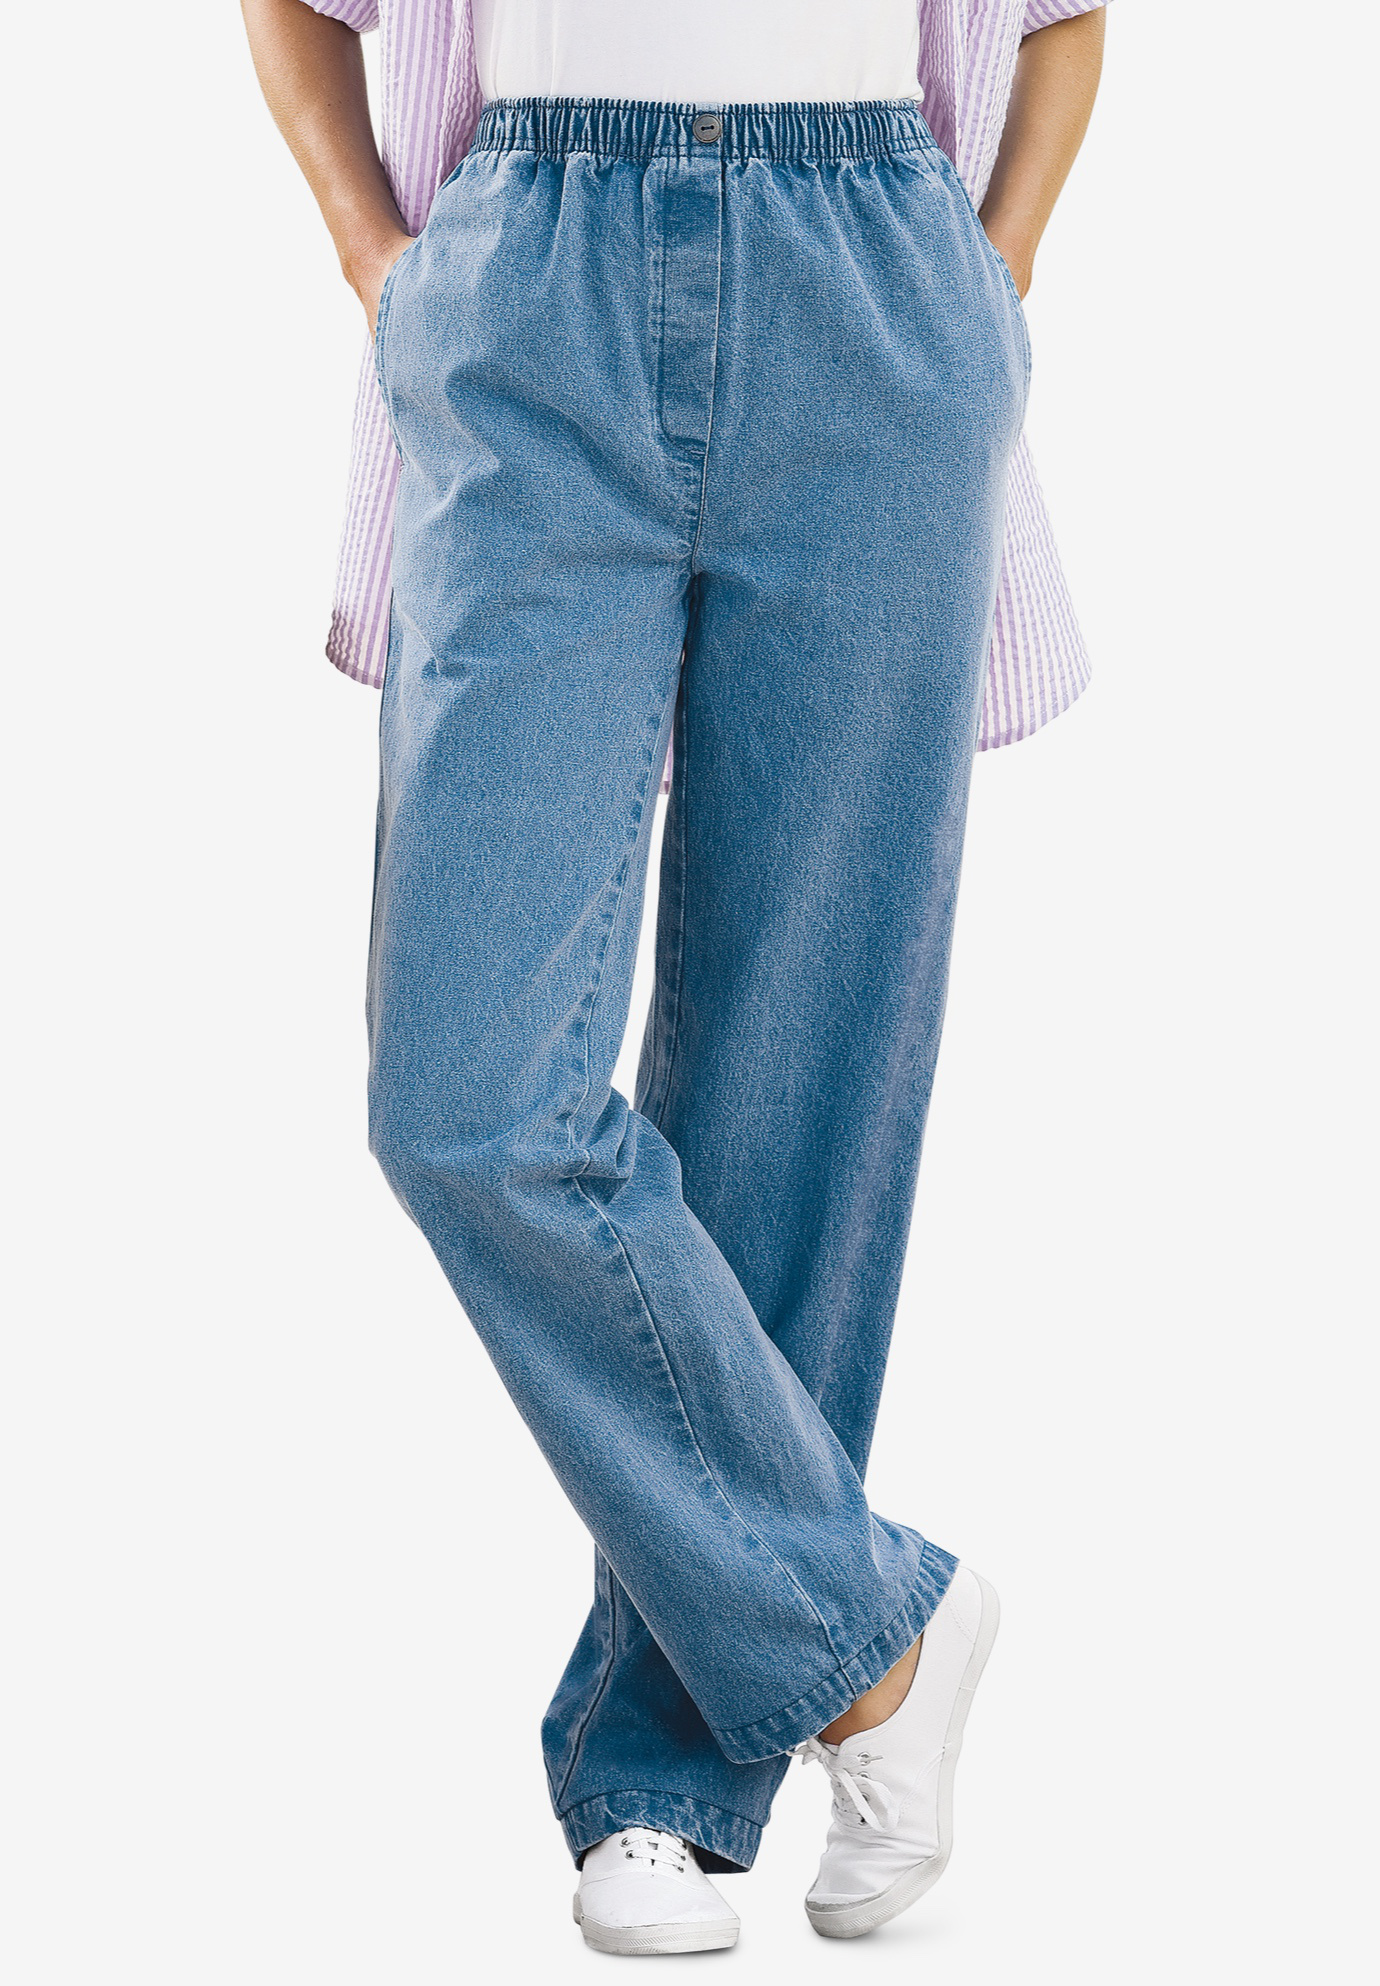 designer jeans for mens size 42